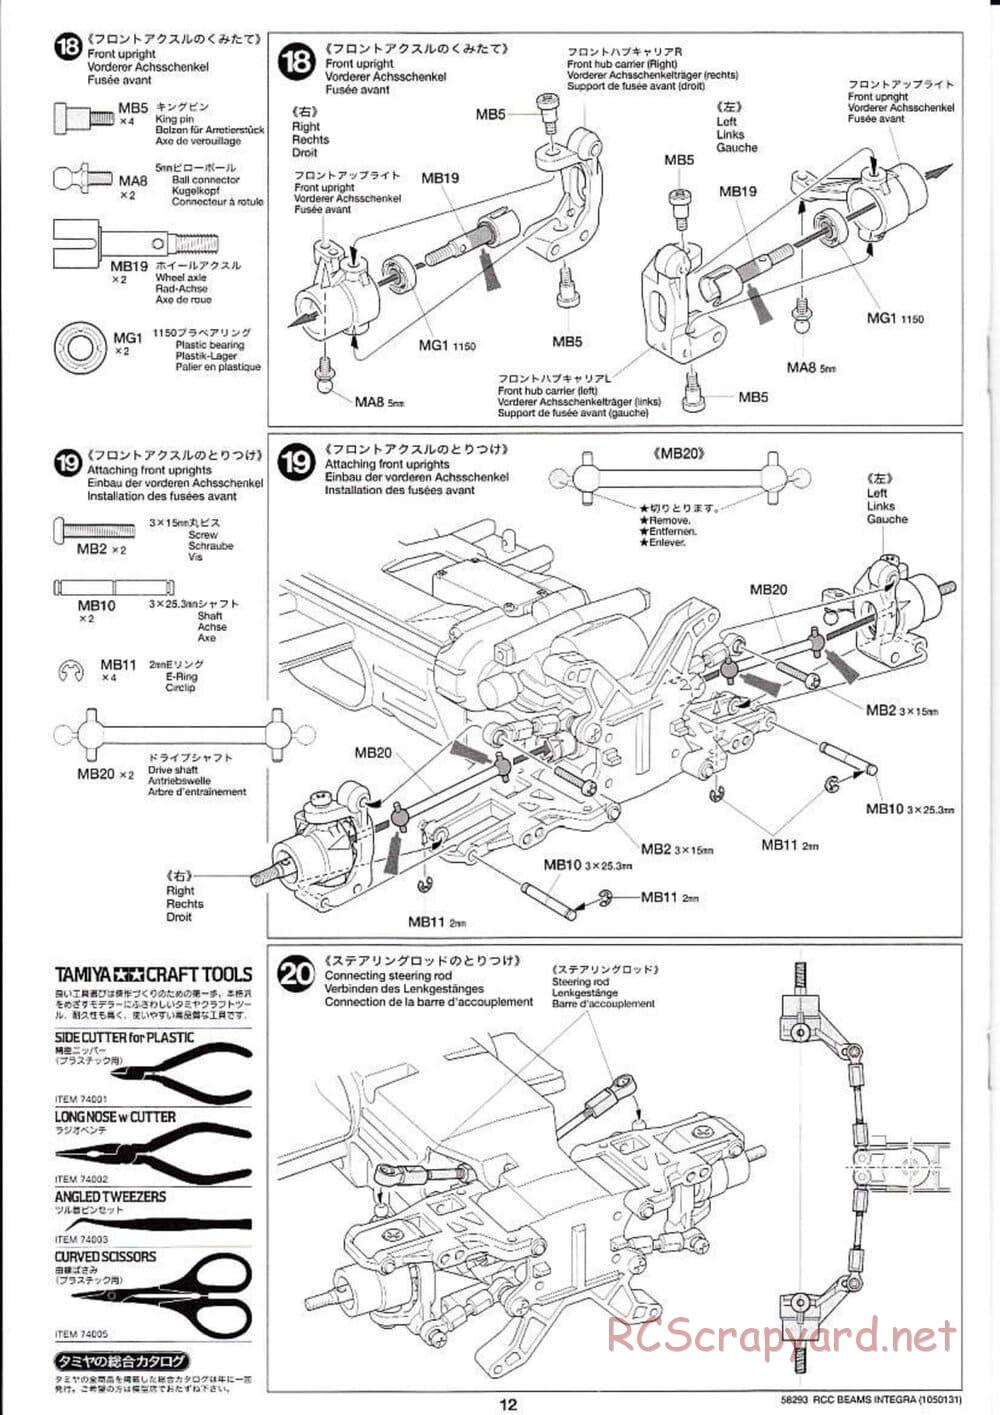 Tamiya - Beams Integra - TL-01 LA Chassis - Manual - Page 12